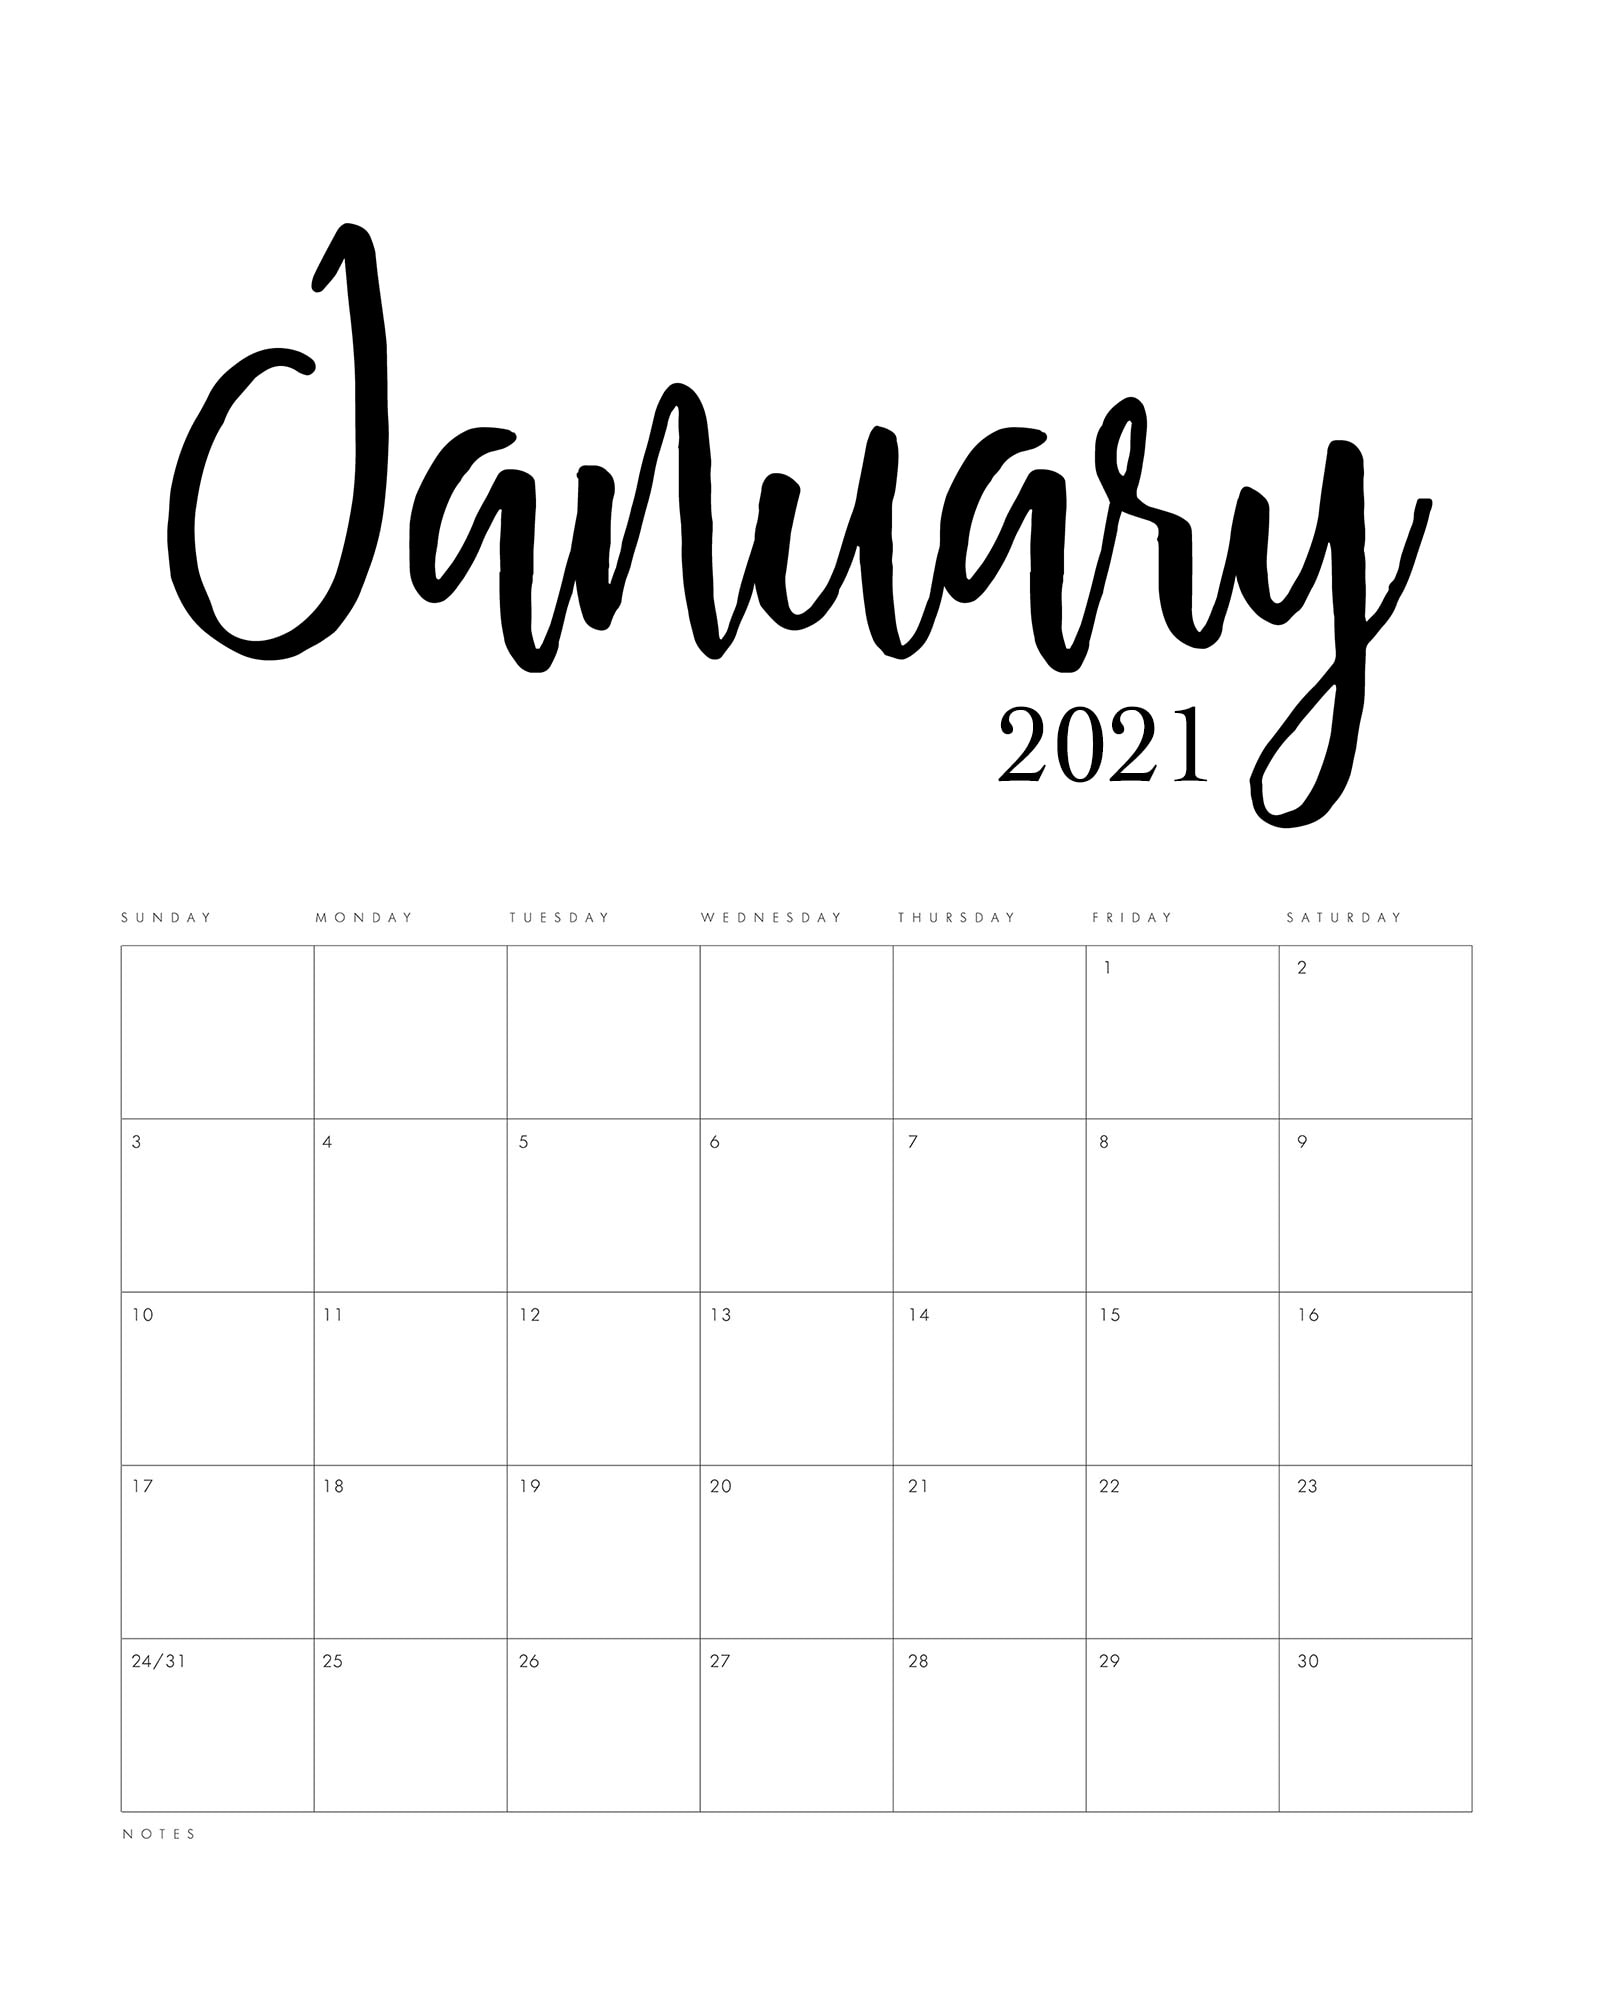 Free Printable 2021 Minimalist Calendar - The Cottage Market